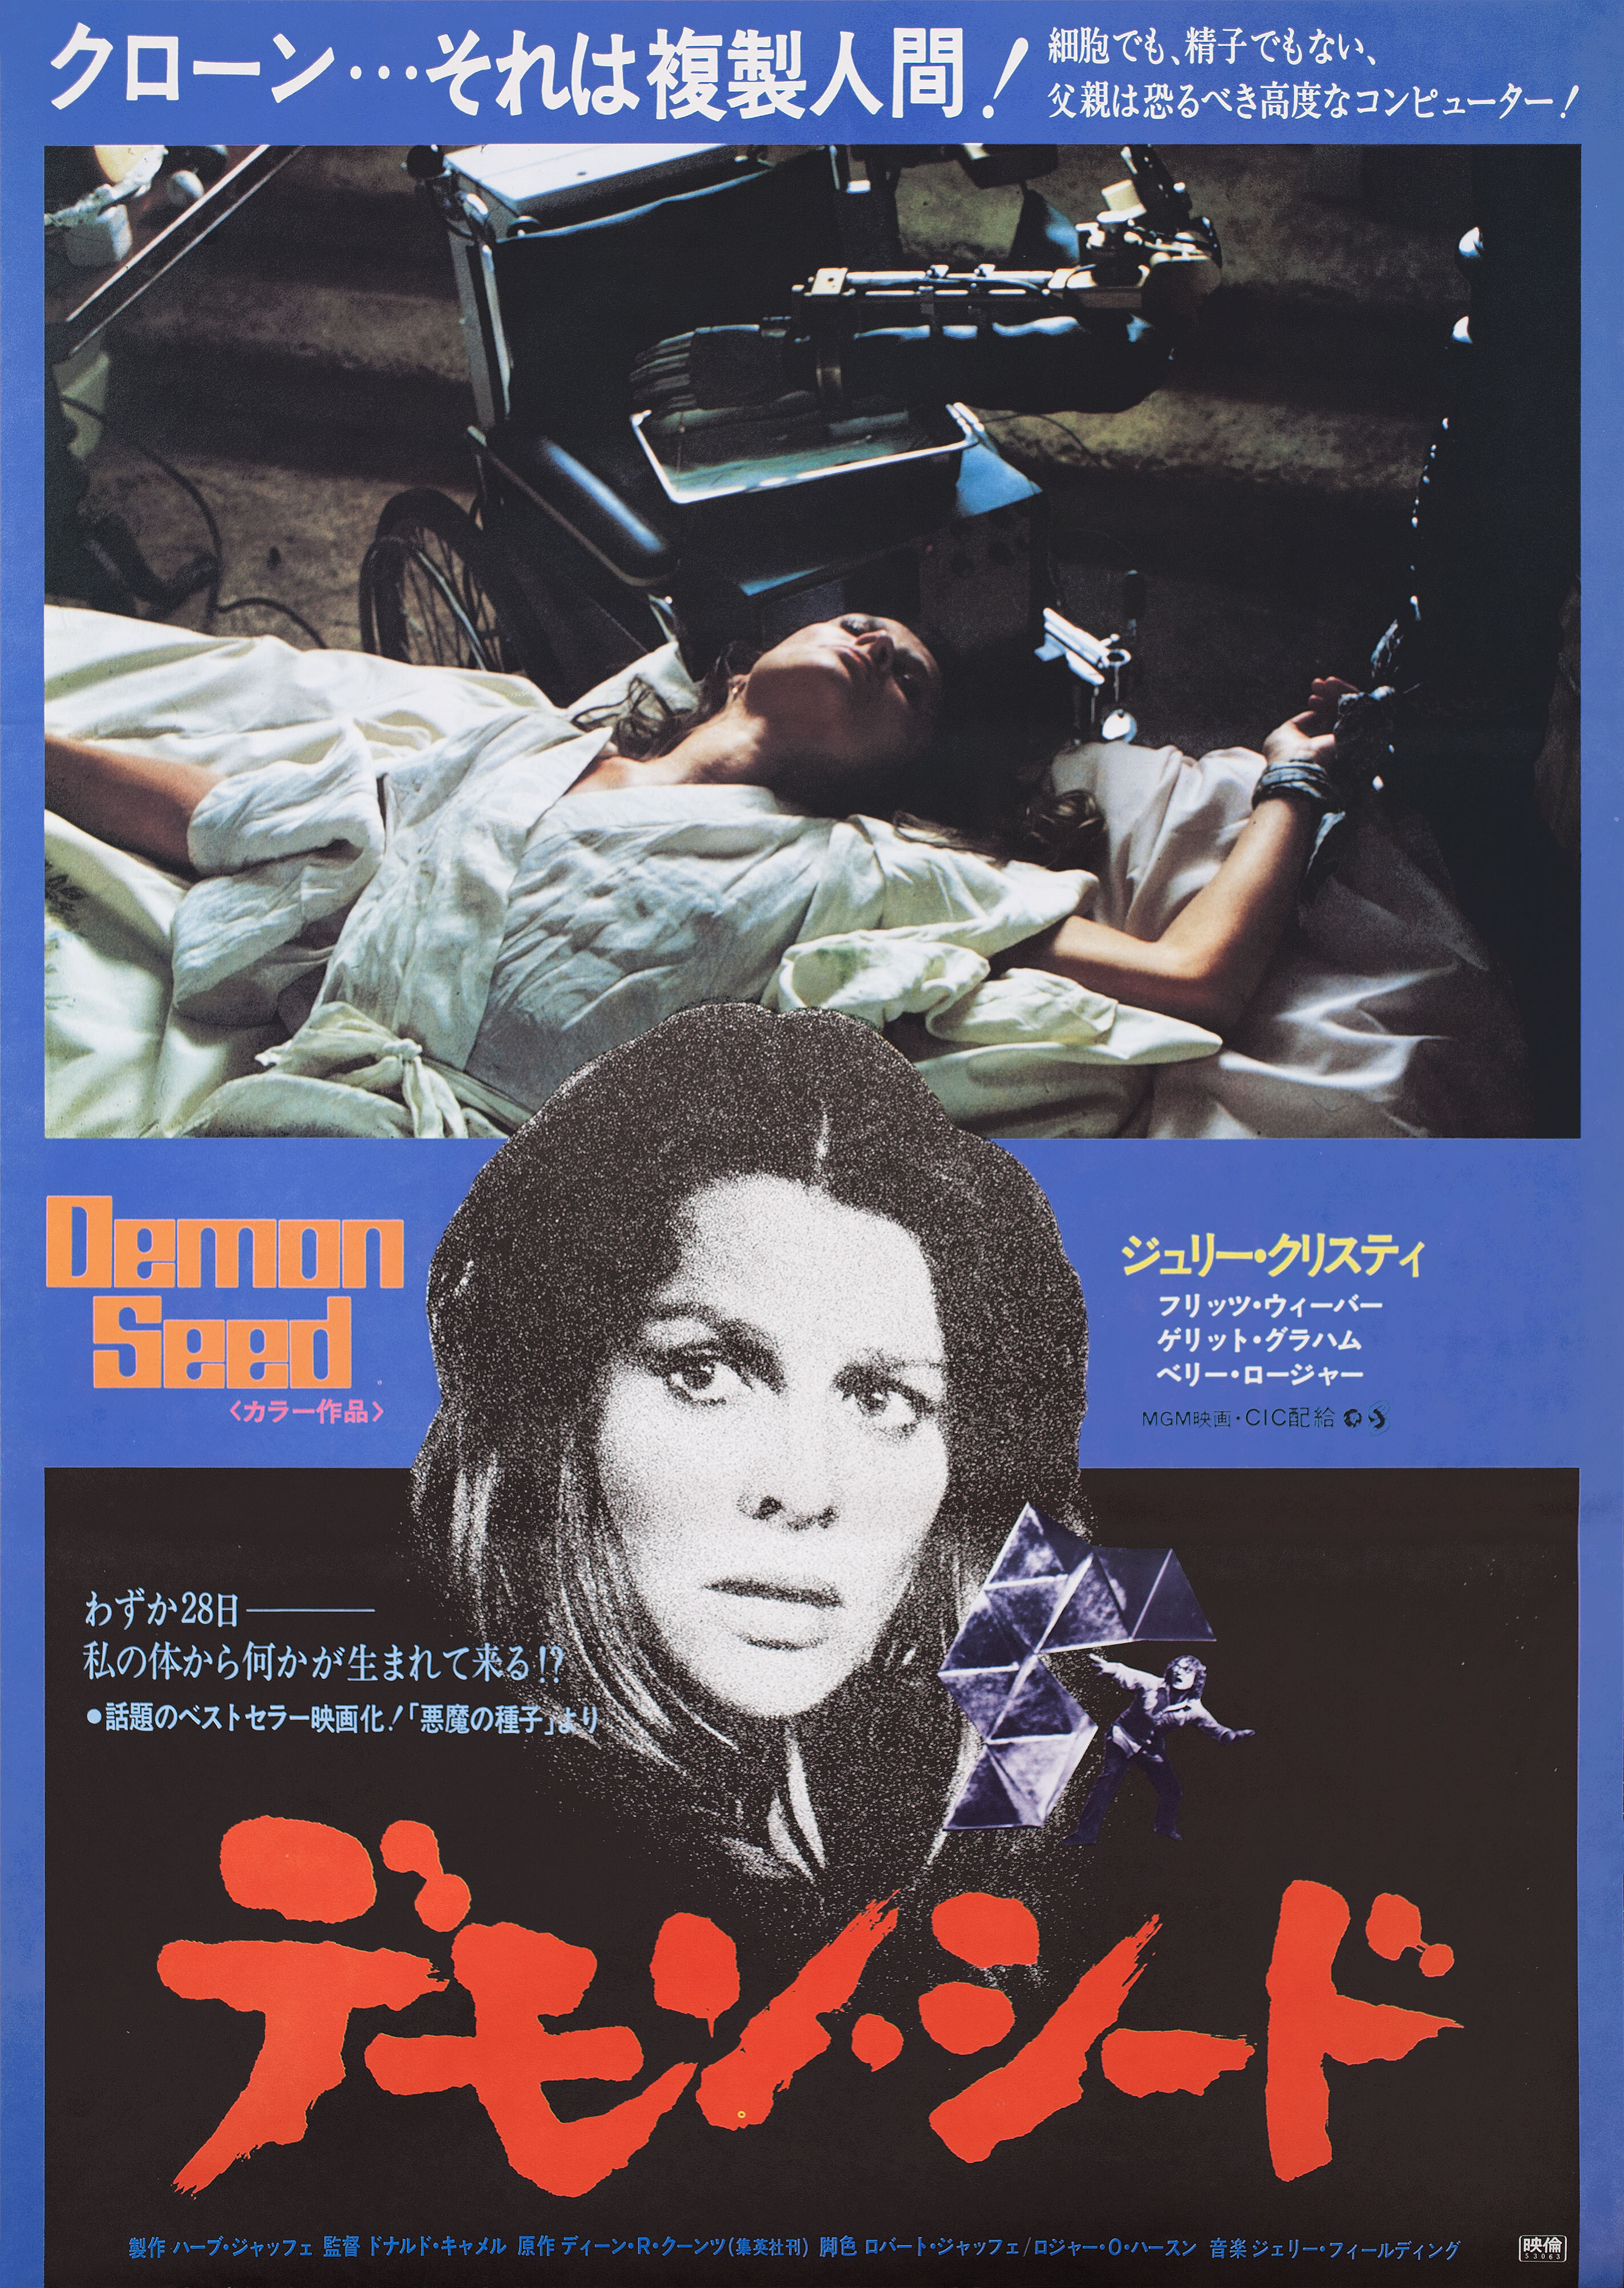 Потомство демона (Demon Seed, 1977), режиссёр Дональд Кэммелл, японский постер к фильму (ужасы, 1978 год)